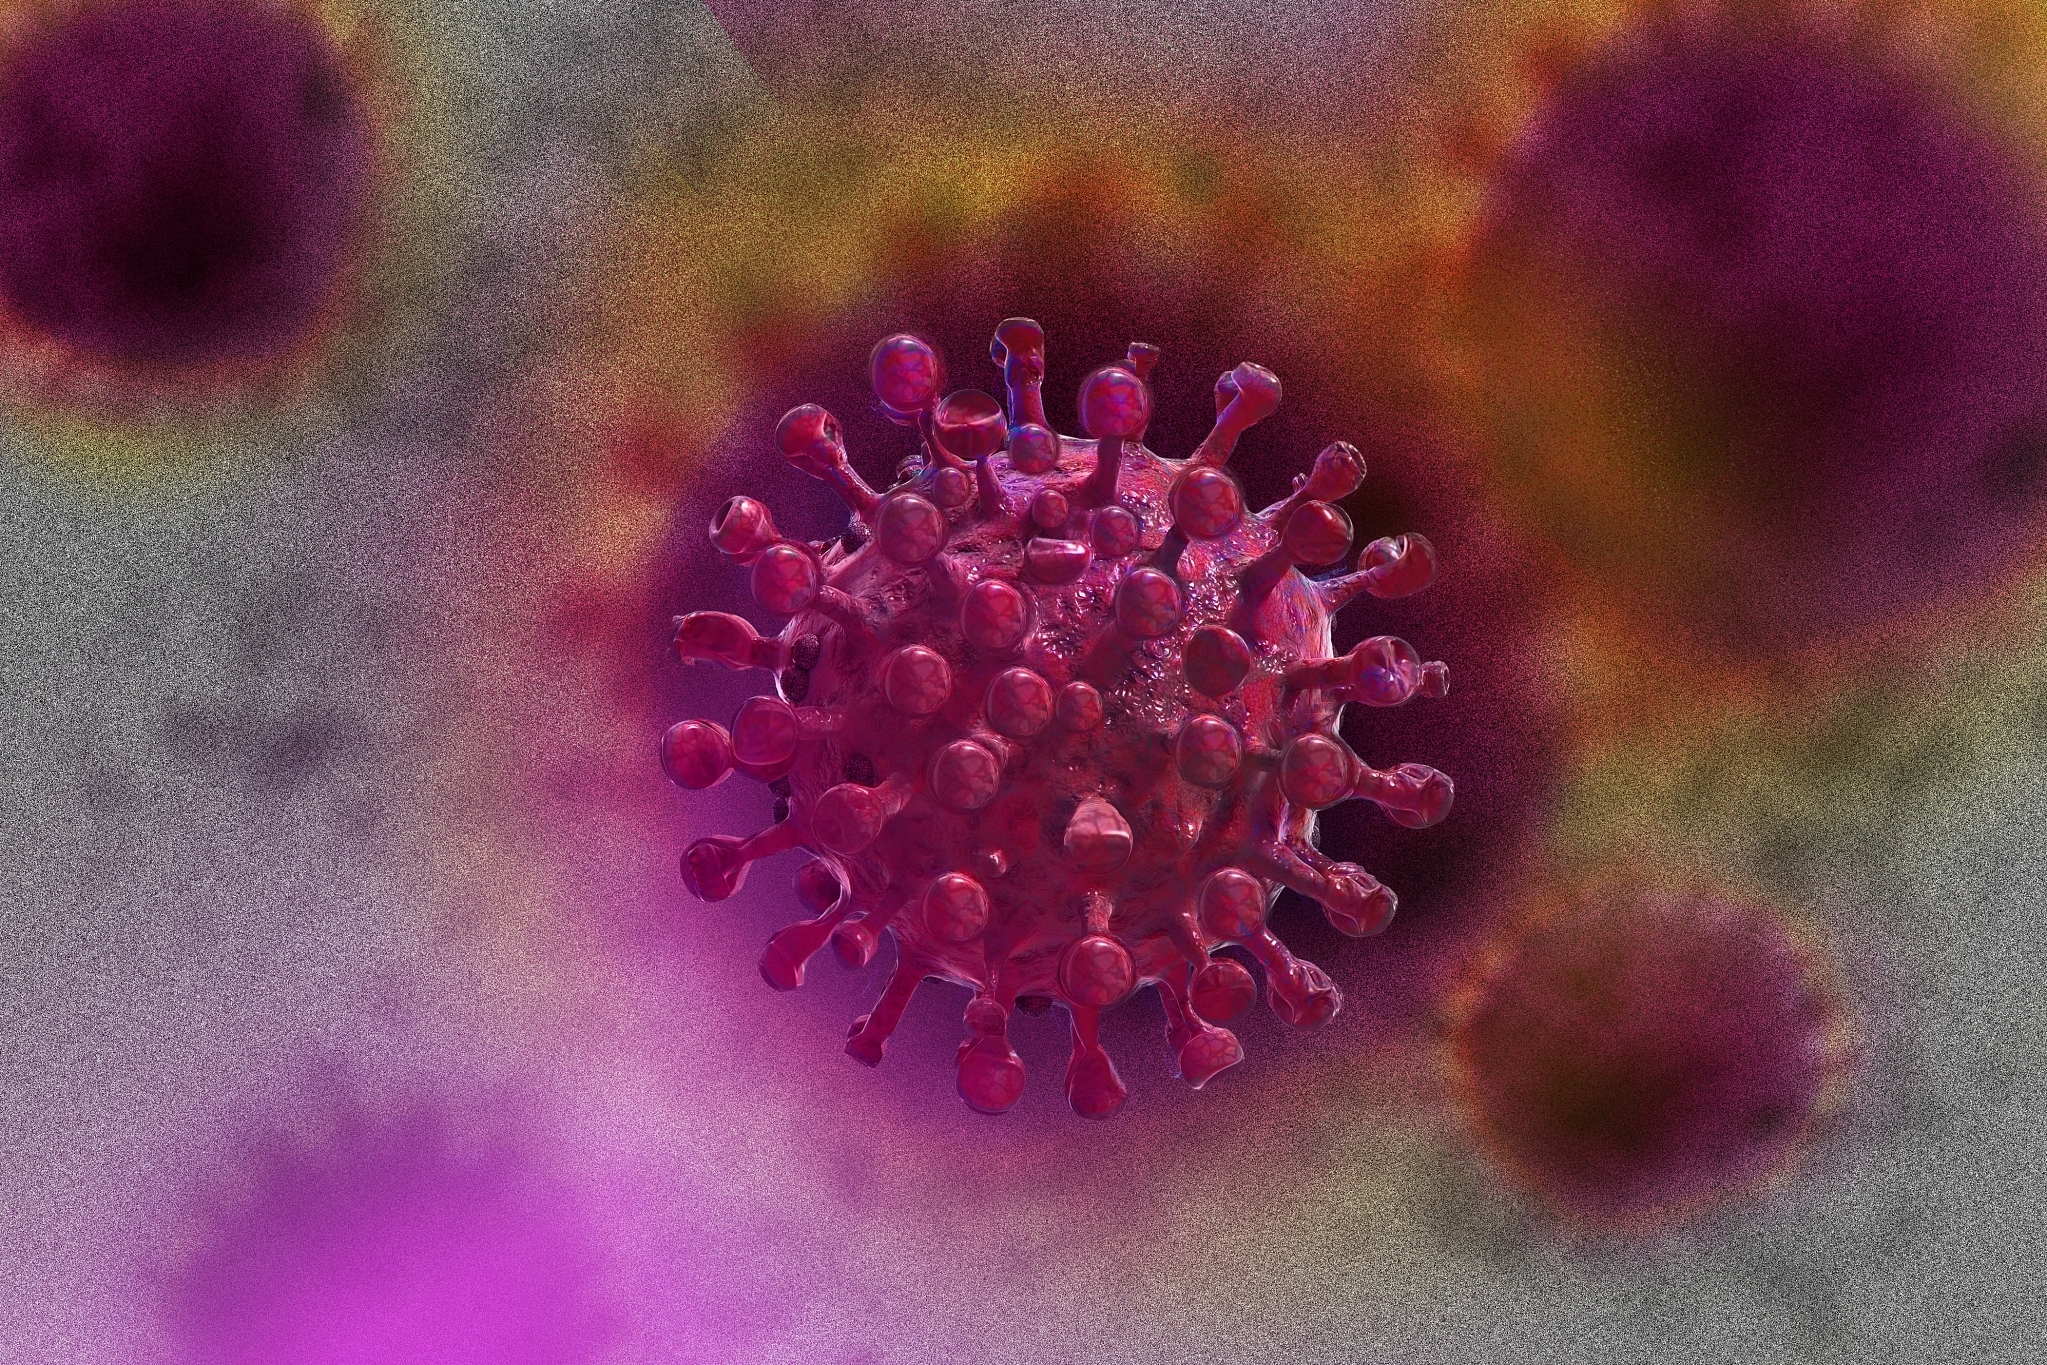 Coronavirus has mutated into three strains.